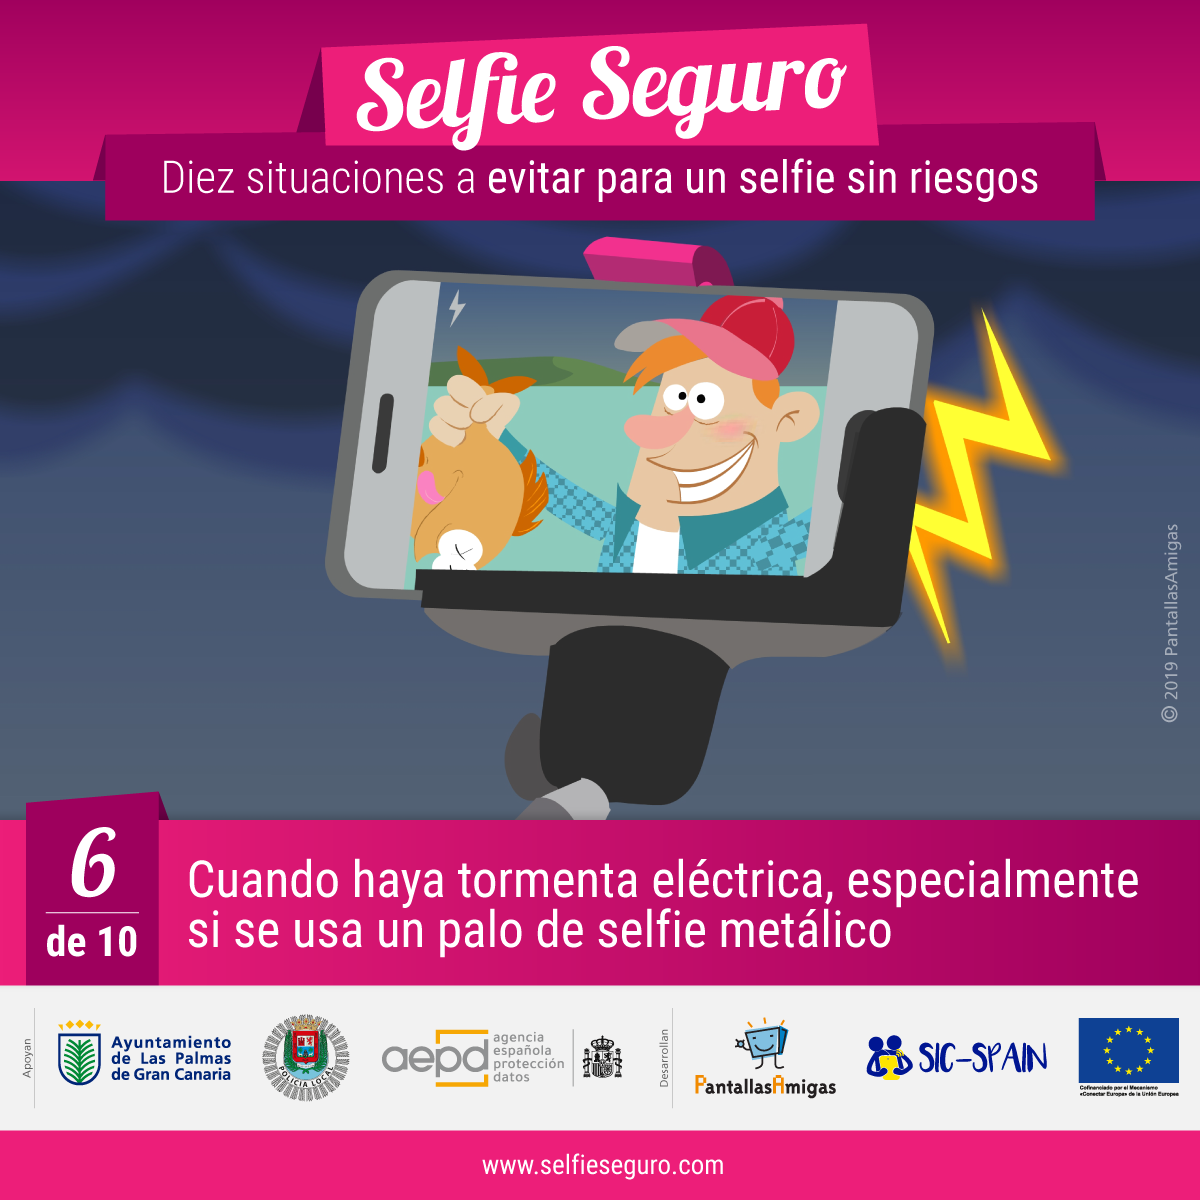 Evitar selfies cuando haya tormenta eléctrica, especialmente si se usa un palo de selfie metálico